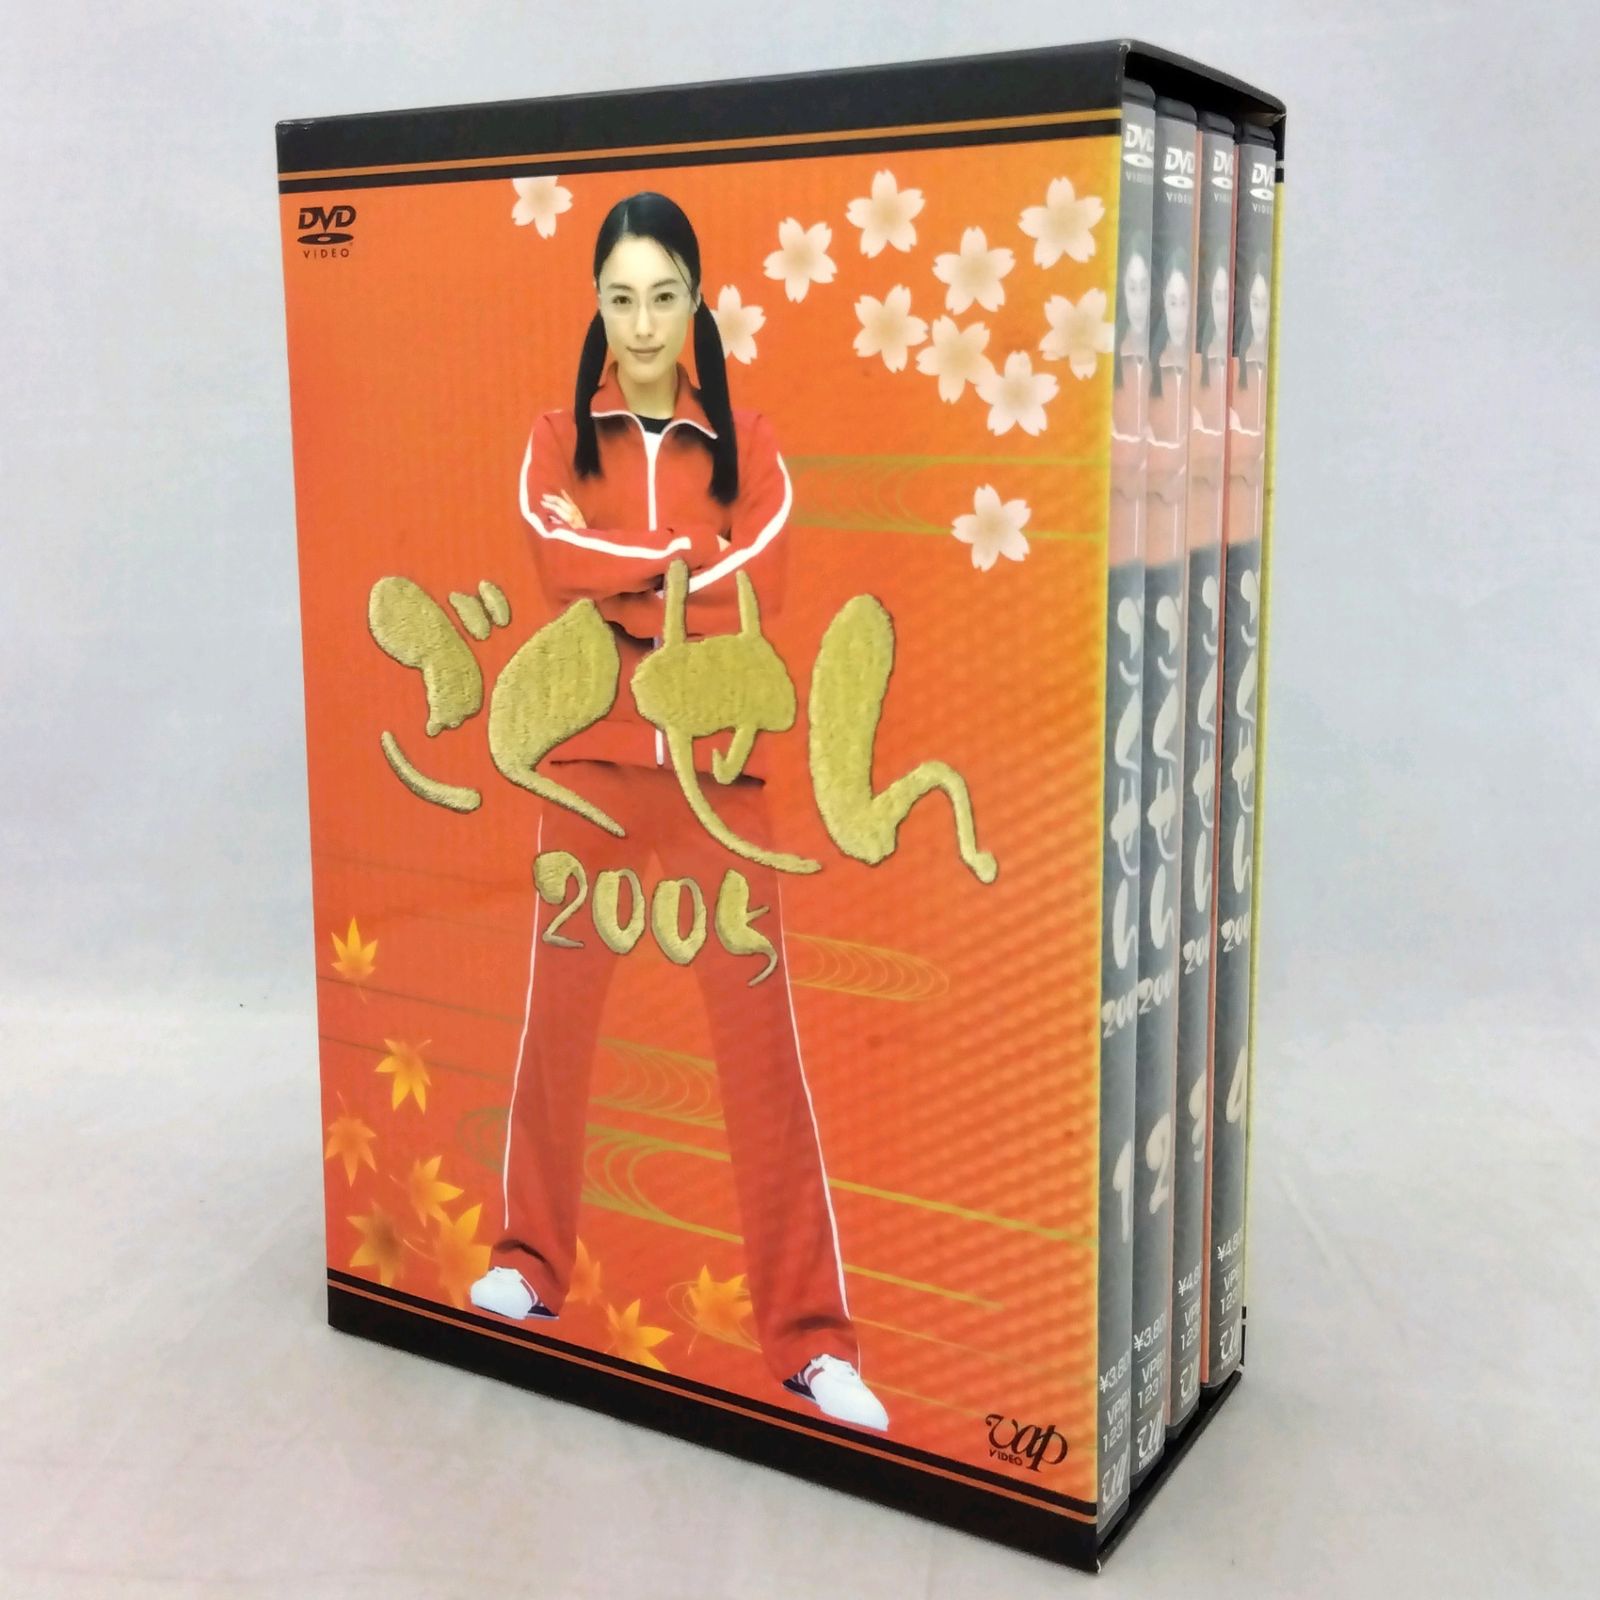 ディスク5枚組】 ごくせん 2005 DVD-BOX - メルカリ